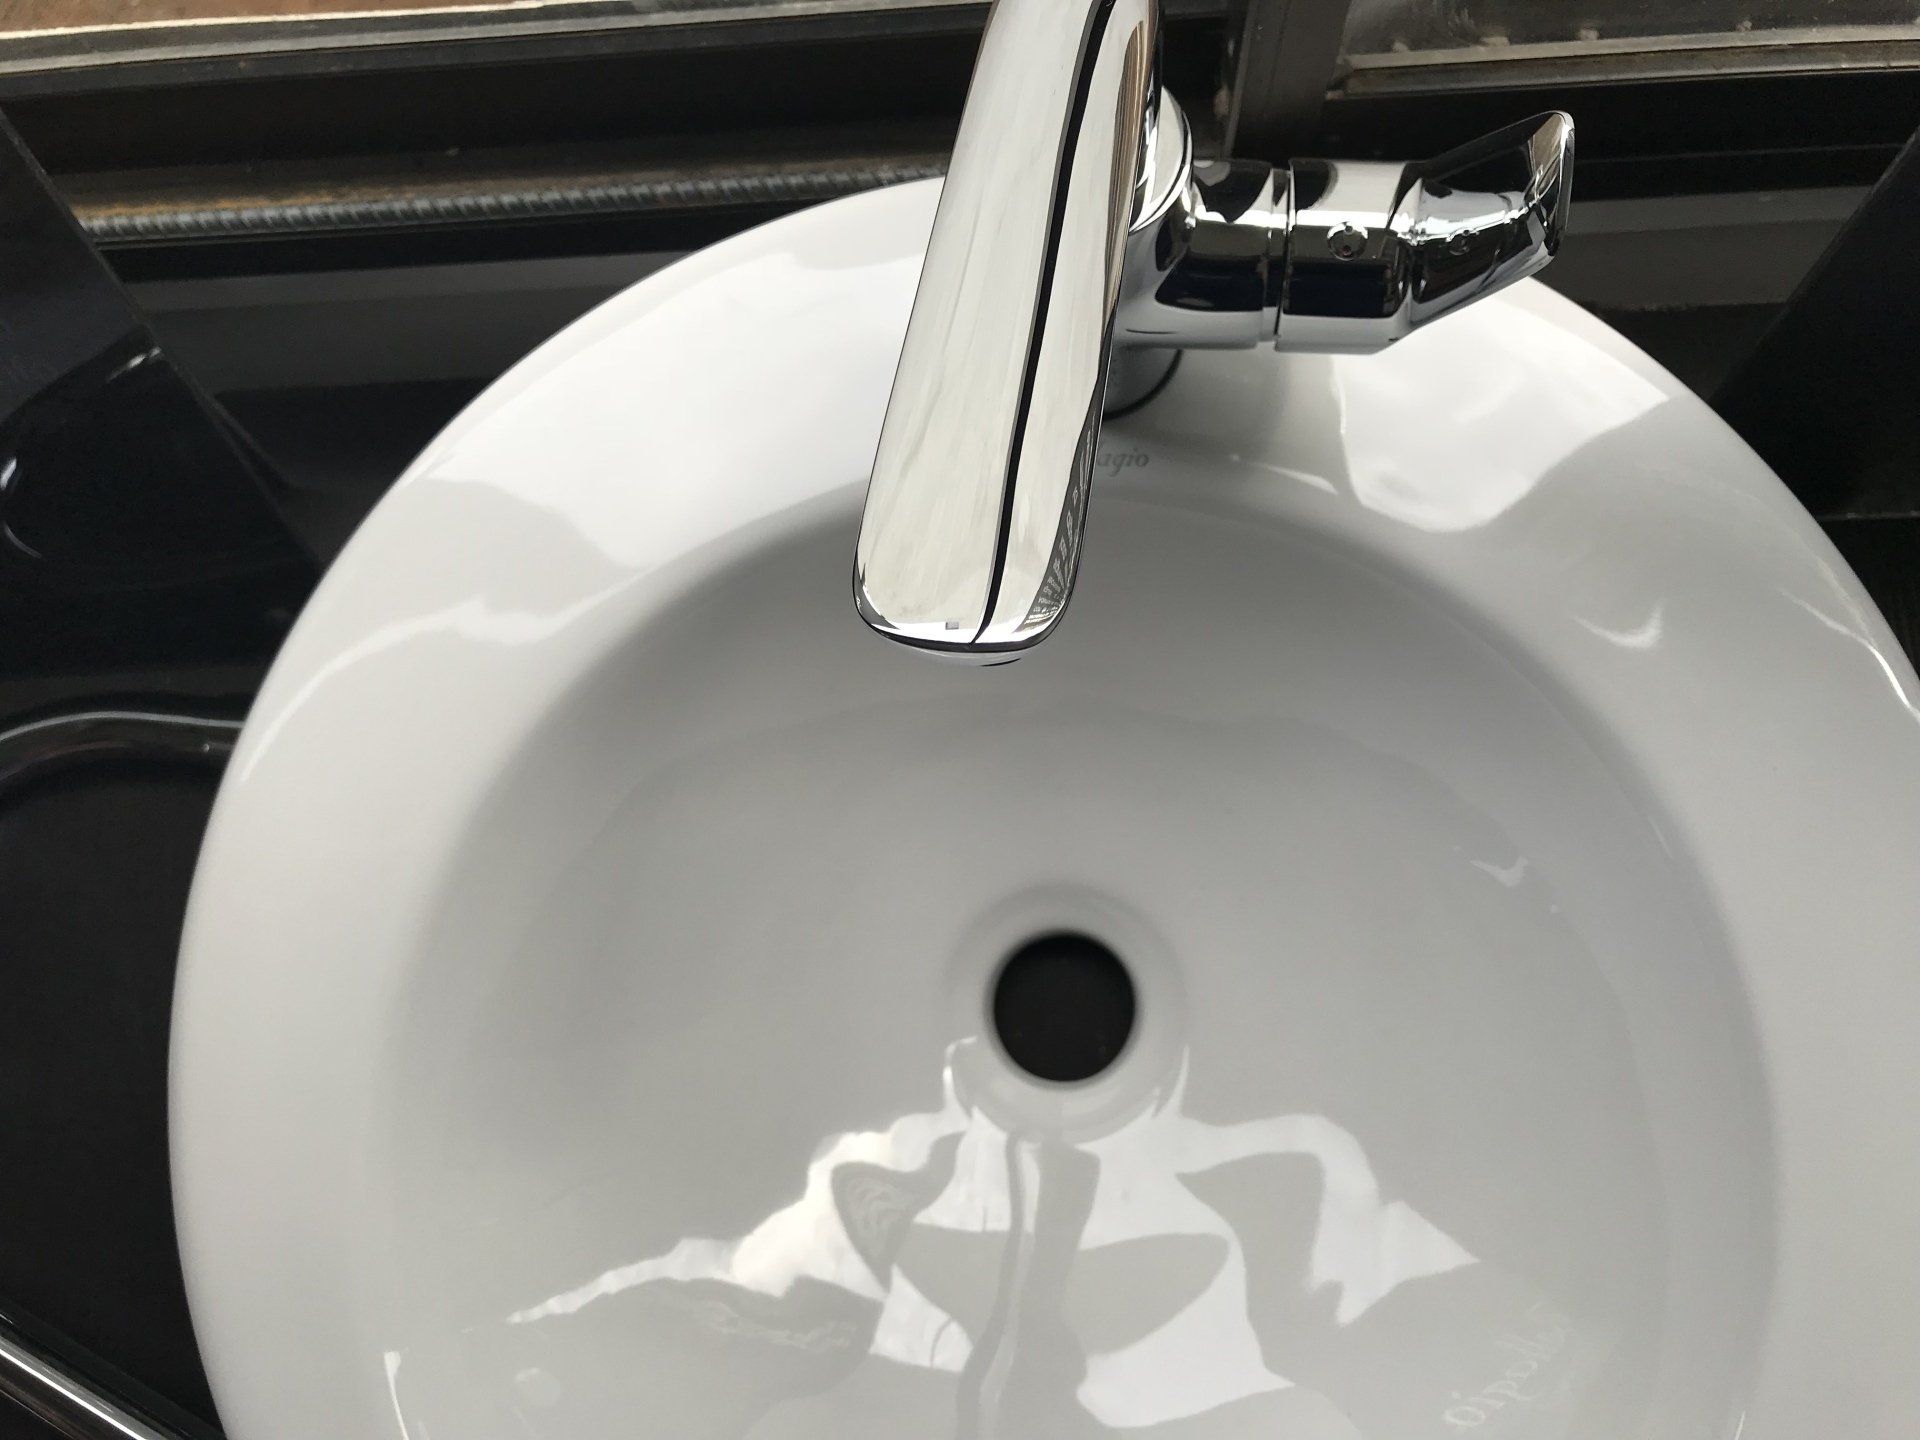 a clean bathroom sink